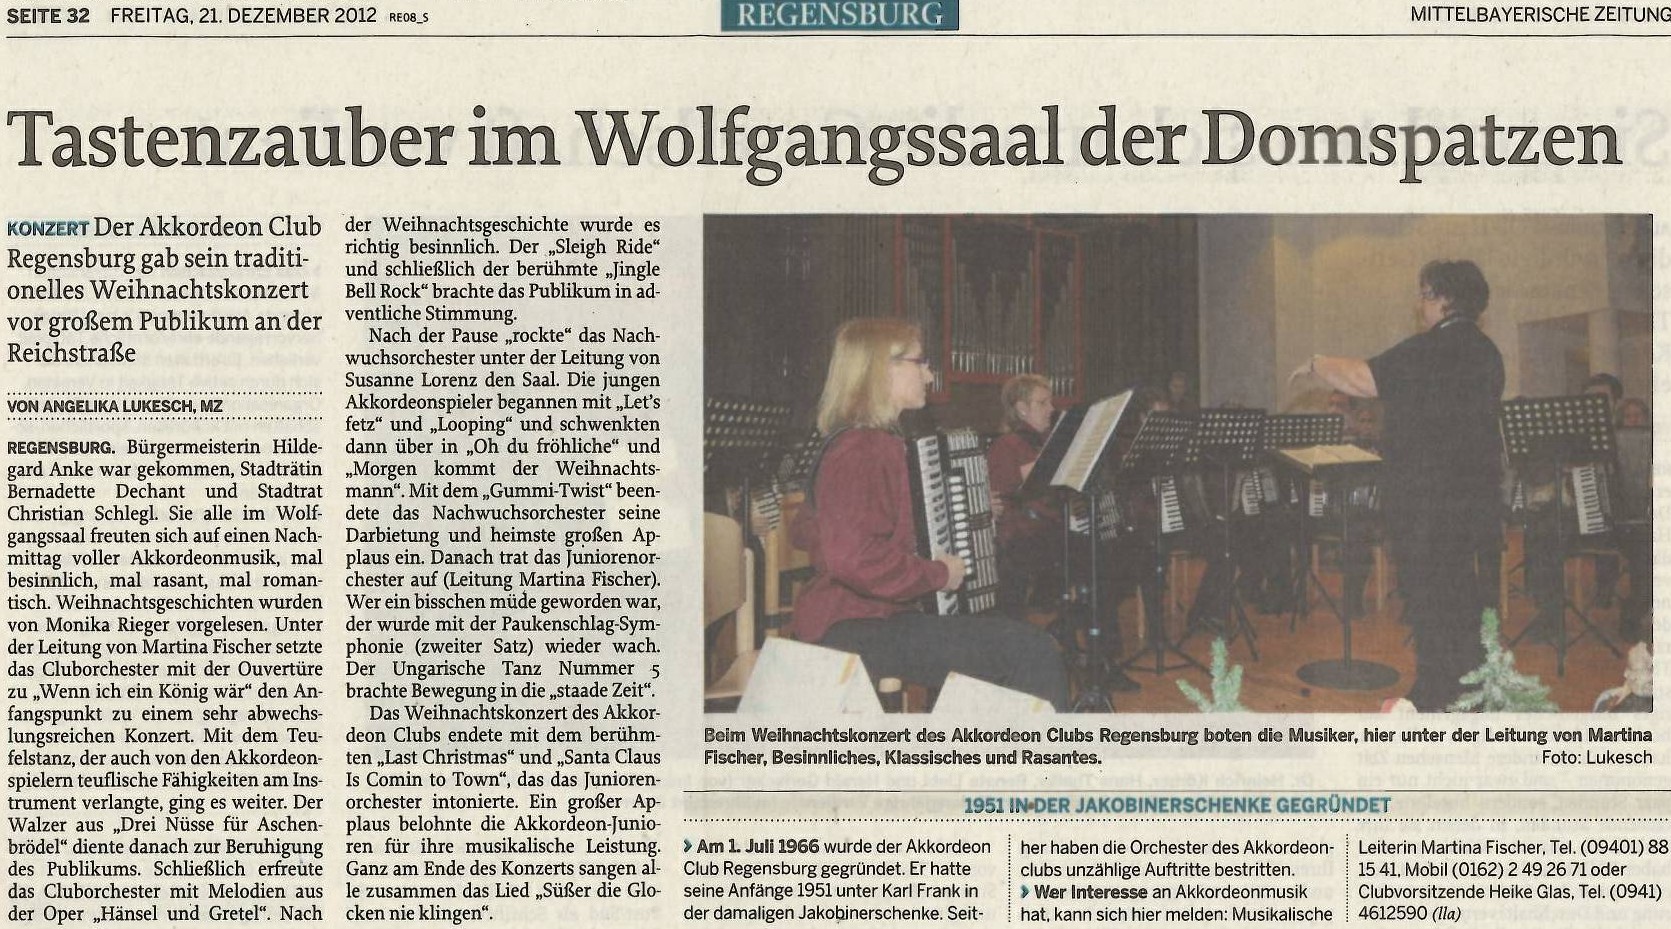 Weihnachtskonzert 2012, Mittelbayrische Zeitung, 21.12.2012